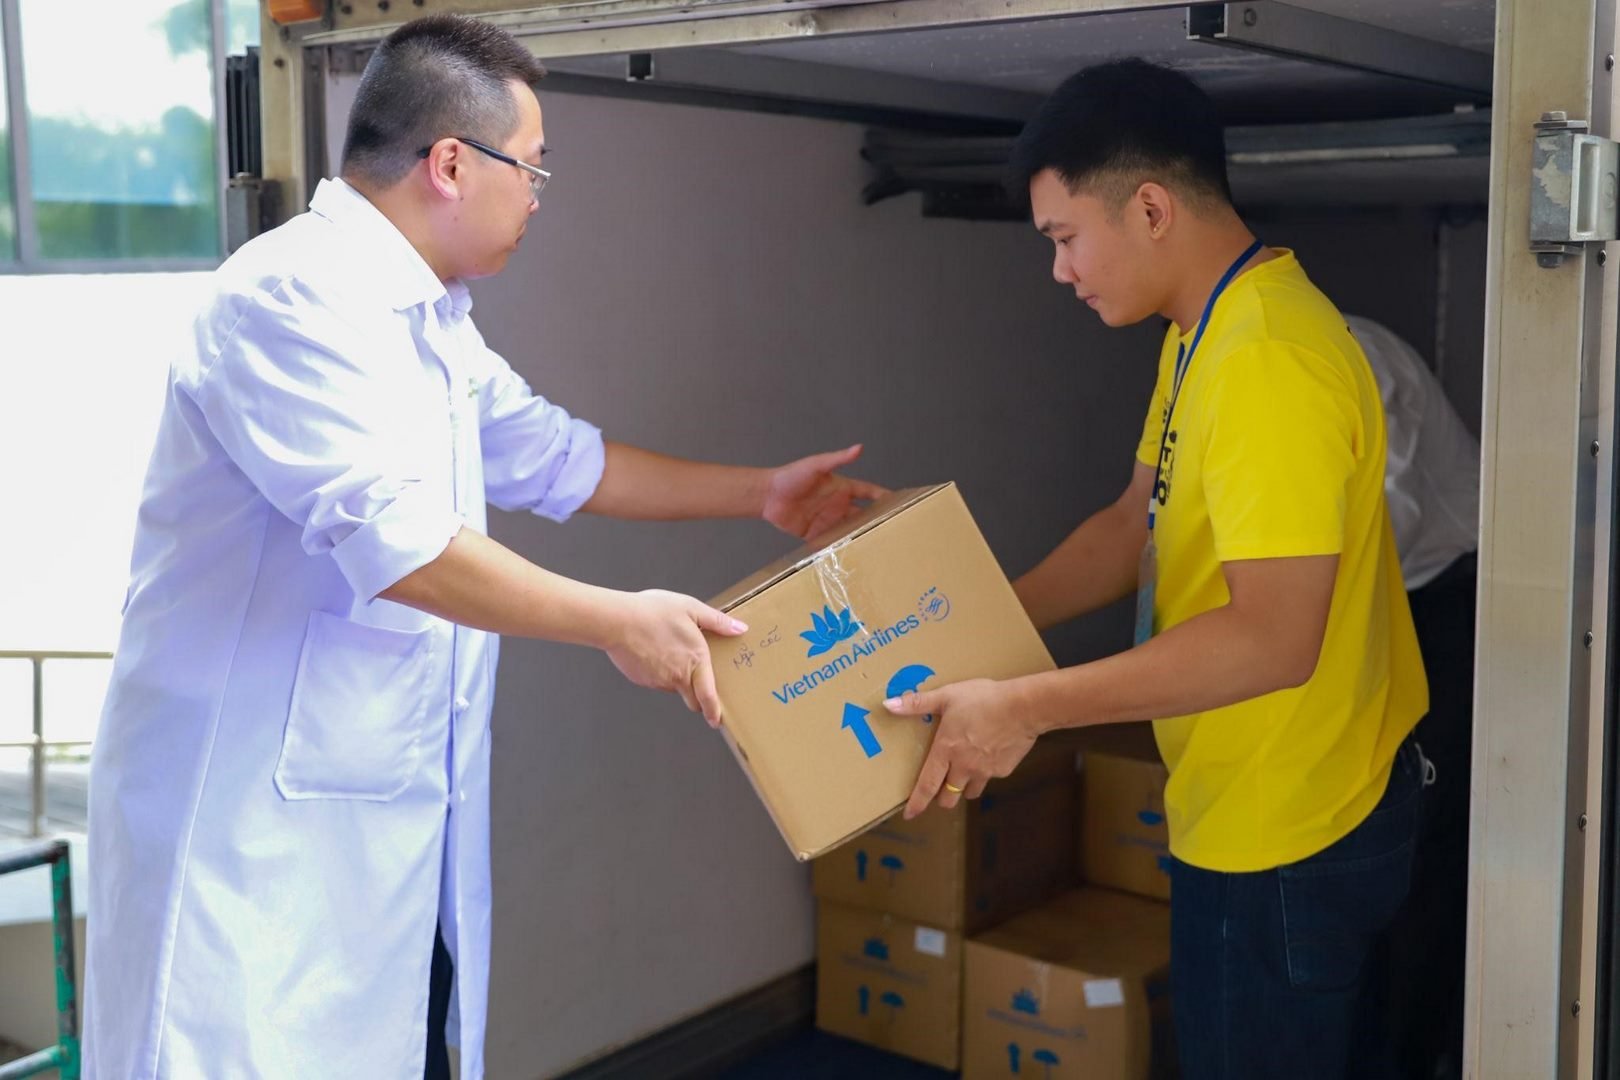 Vietnam Airlines bàn giao cho VietHarvest thực phẩm khô như gói hạt rang, bánh đóng gói các loại, hộp ngũ cốc để chuyển tới các tổ chức, cá nhân có hoàn cảnh khó khăn. Ảnh: Vietnam Airlines